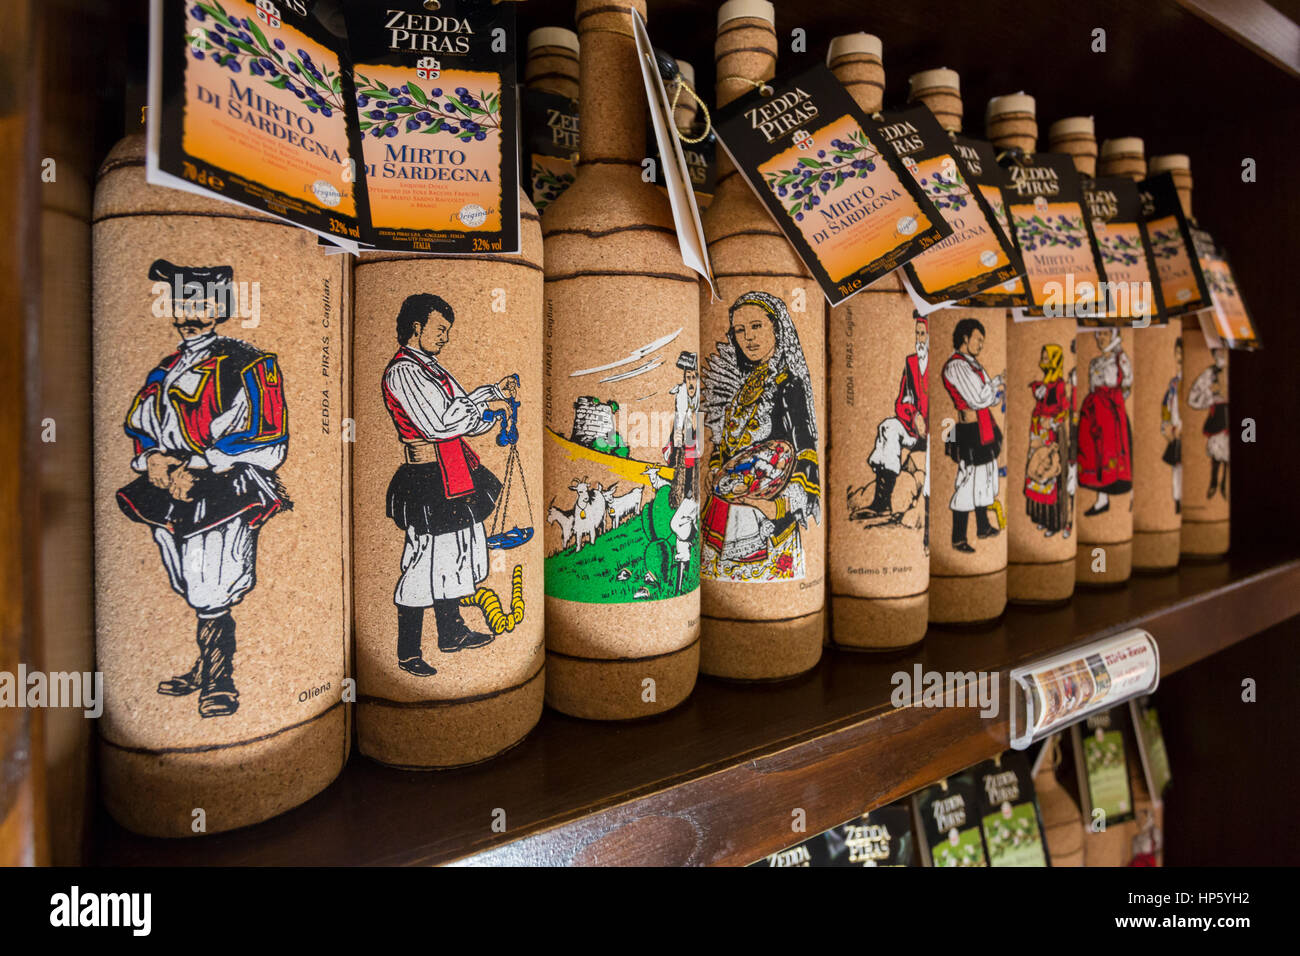 Un bouchon de bouteille couverte de mirto, une liqueur typique de la  Sardaigne fabriqués à partir de baies de myrte Photo Stock - Alamy